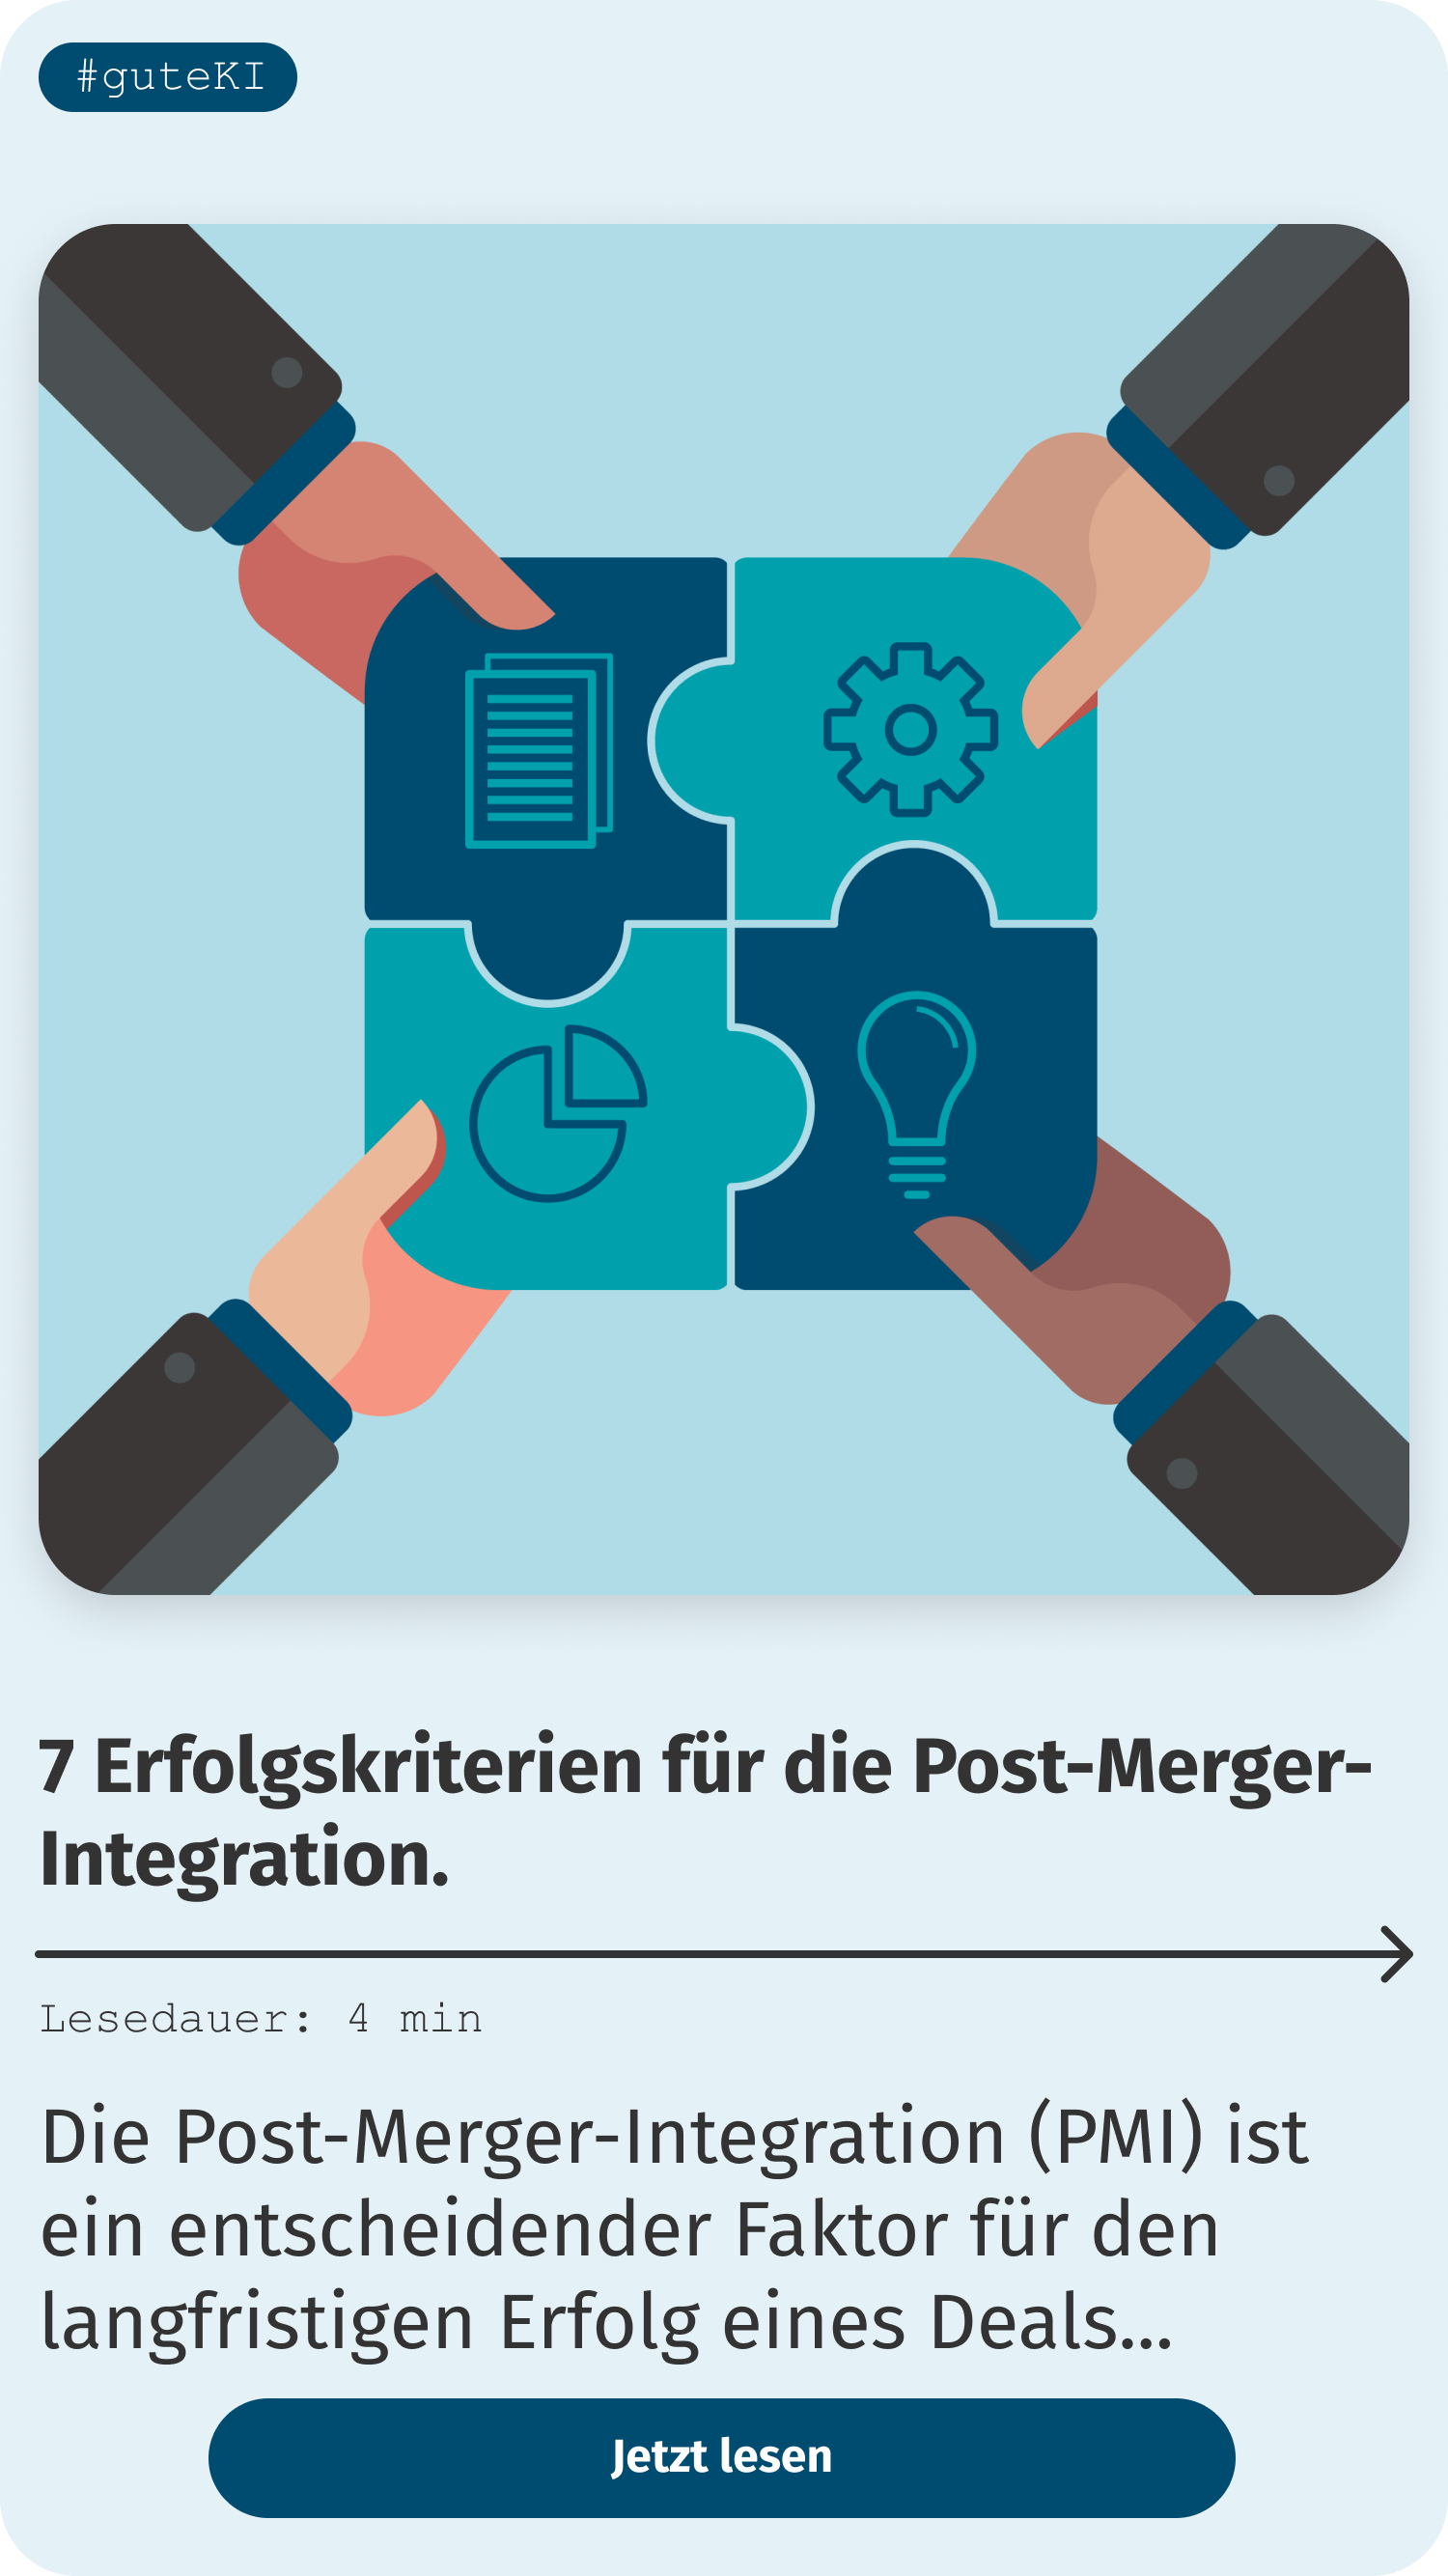 7 Erfolgskriterien für die Post-Merger-Integration